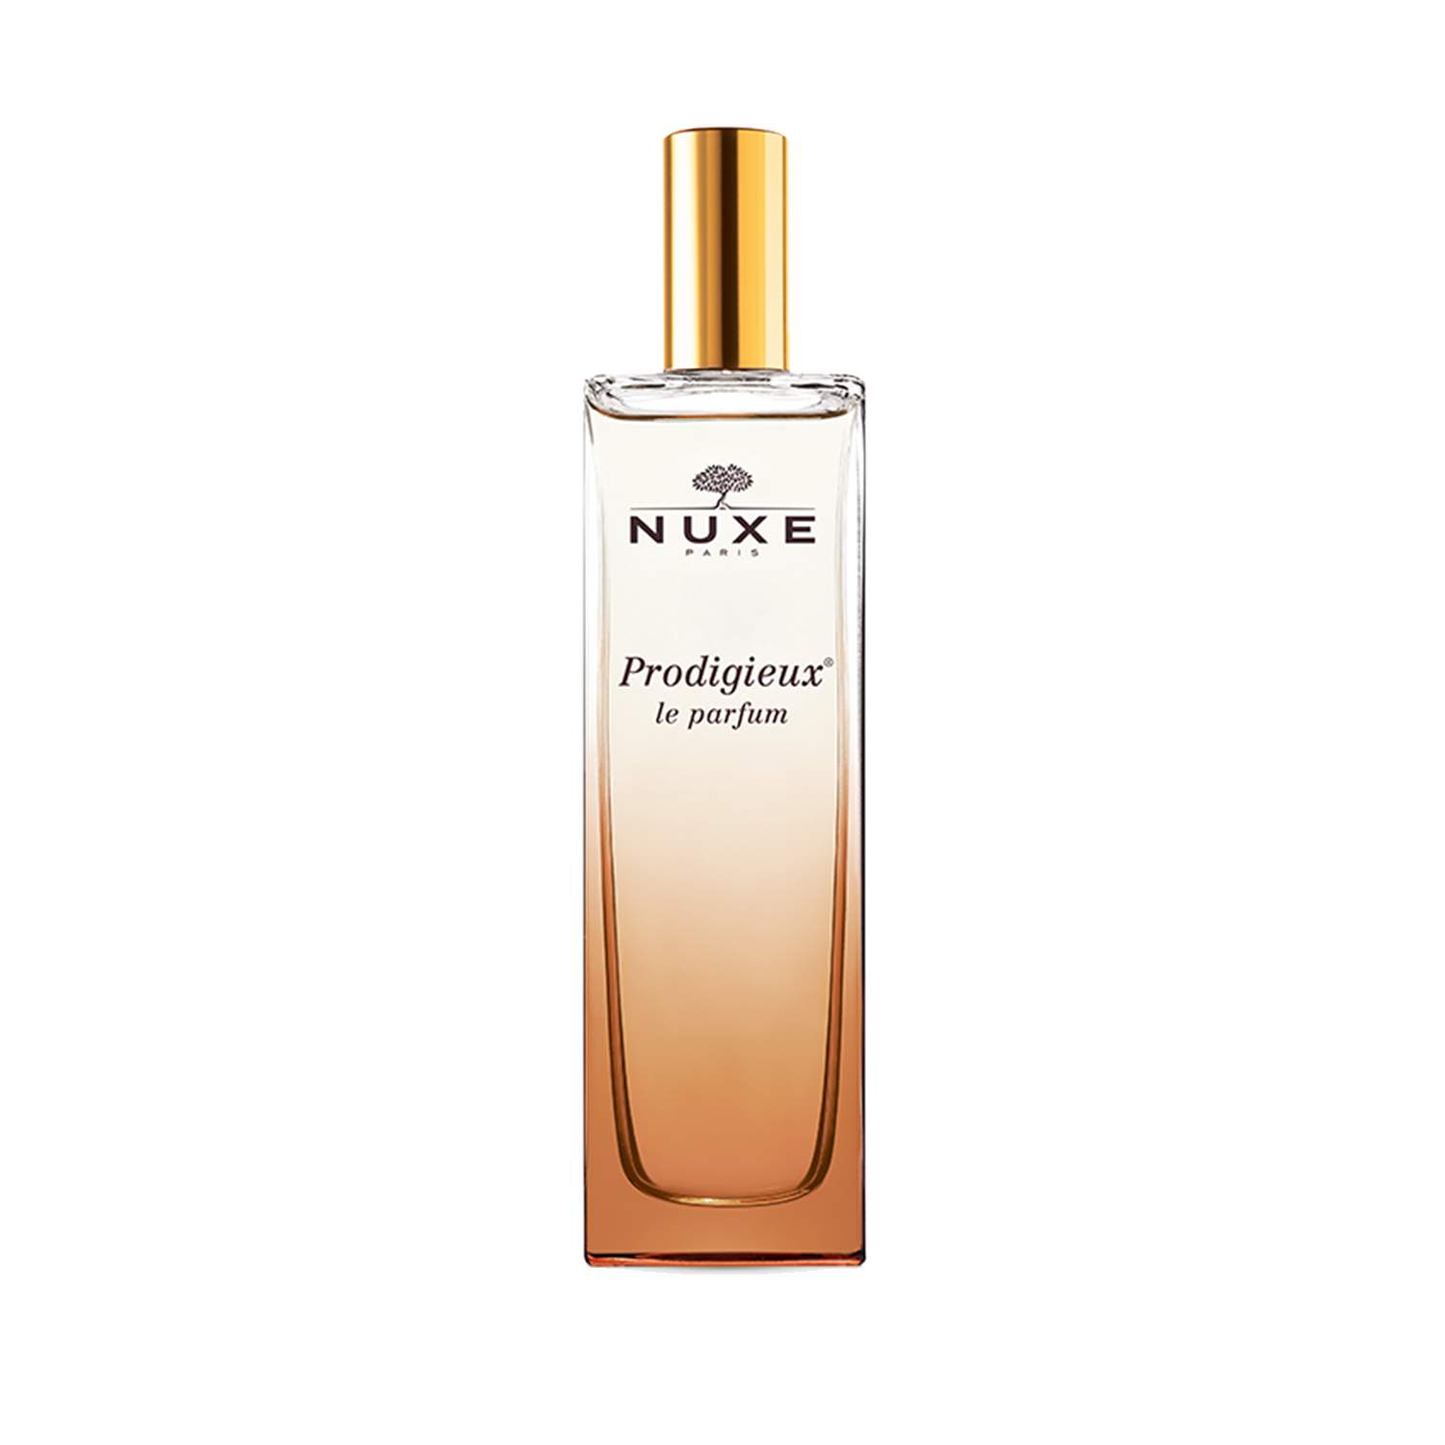 NUXE Prodigieux ® Le Parfum